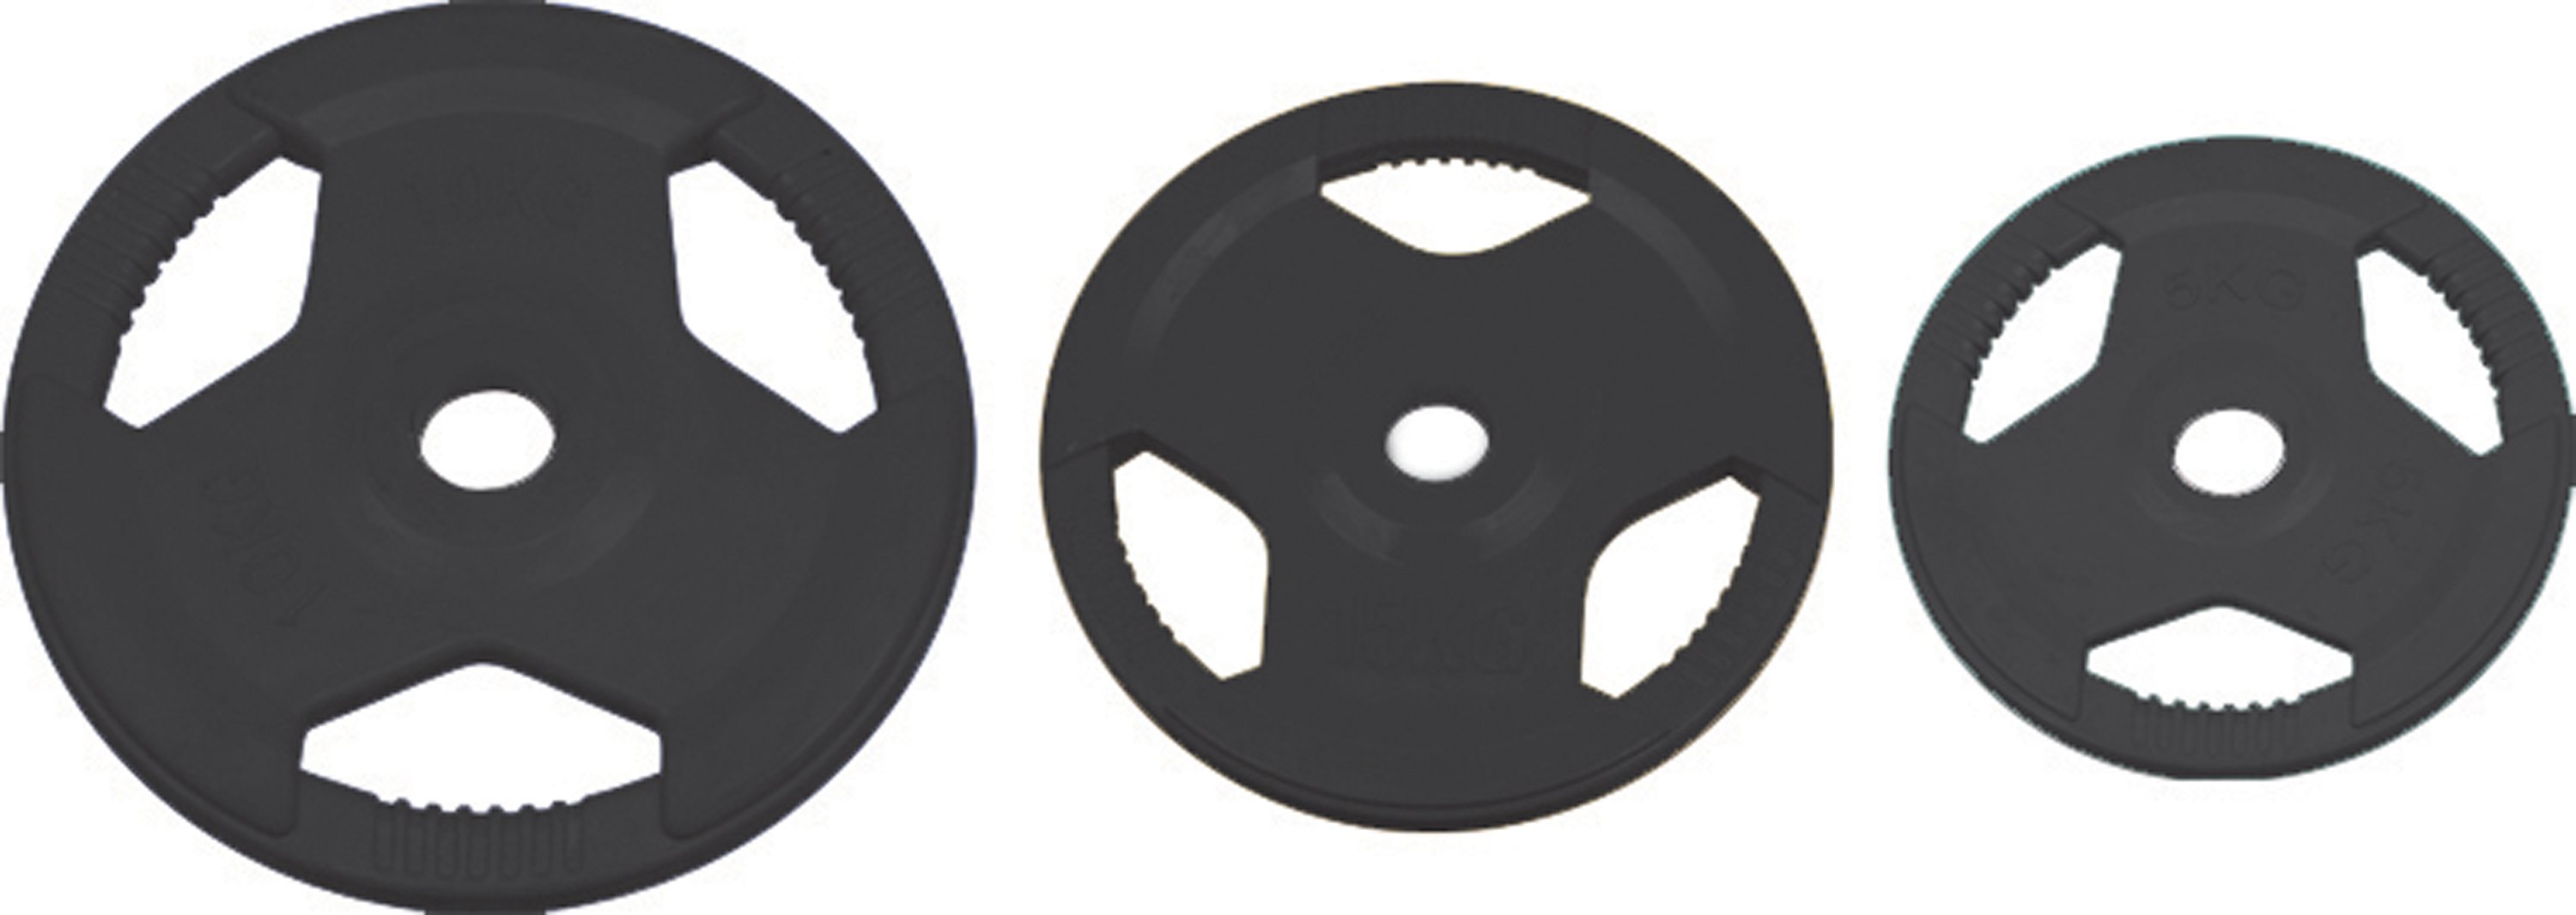 Disque Olympique caoutchouc noir 25 kg. (REF MS-609621)